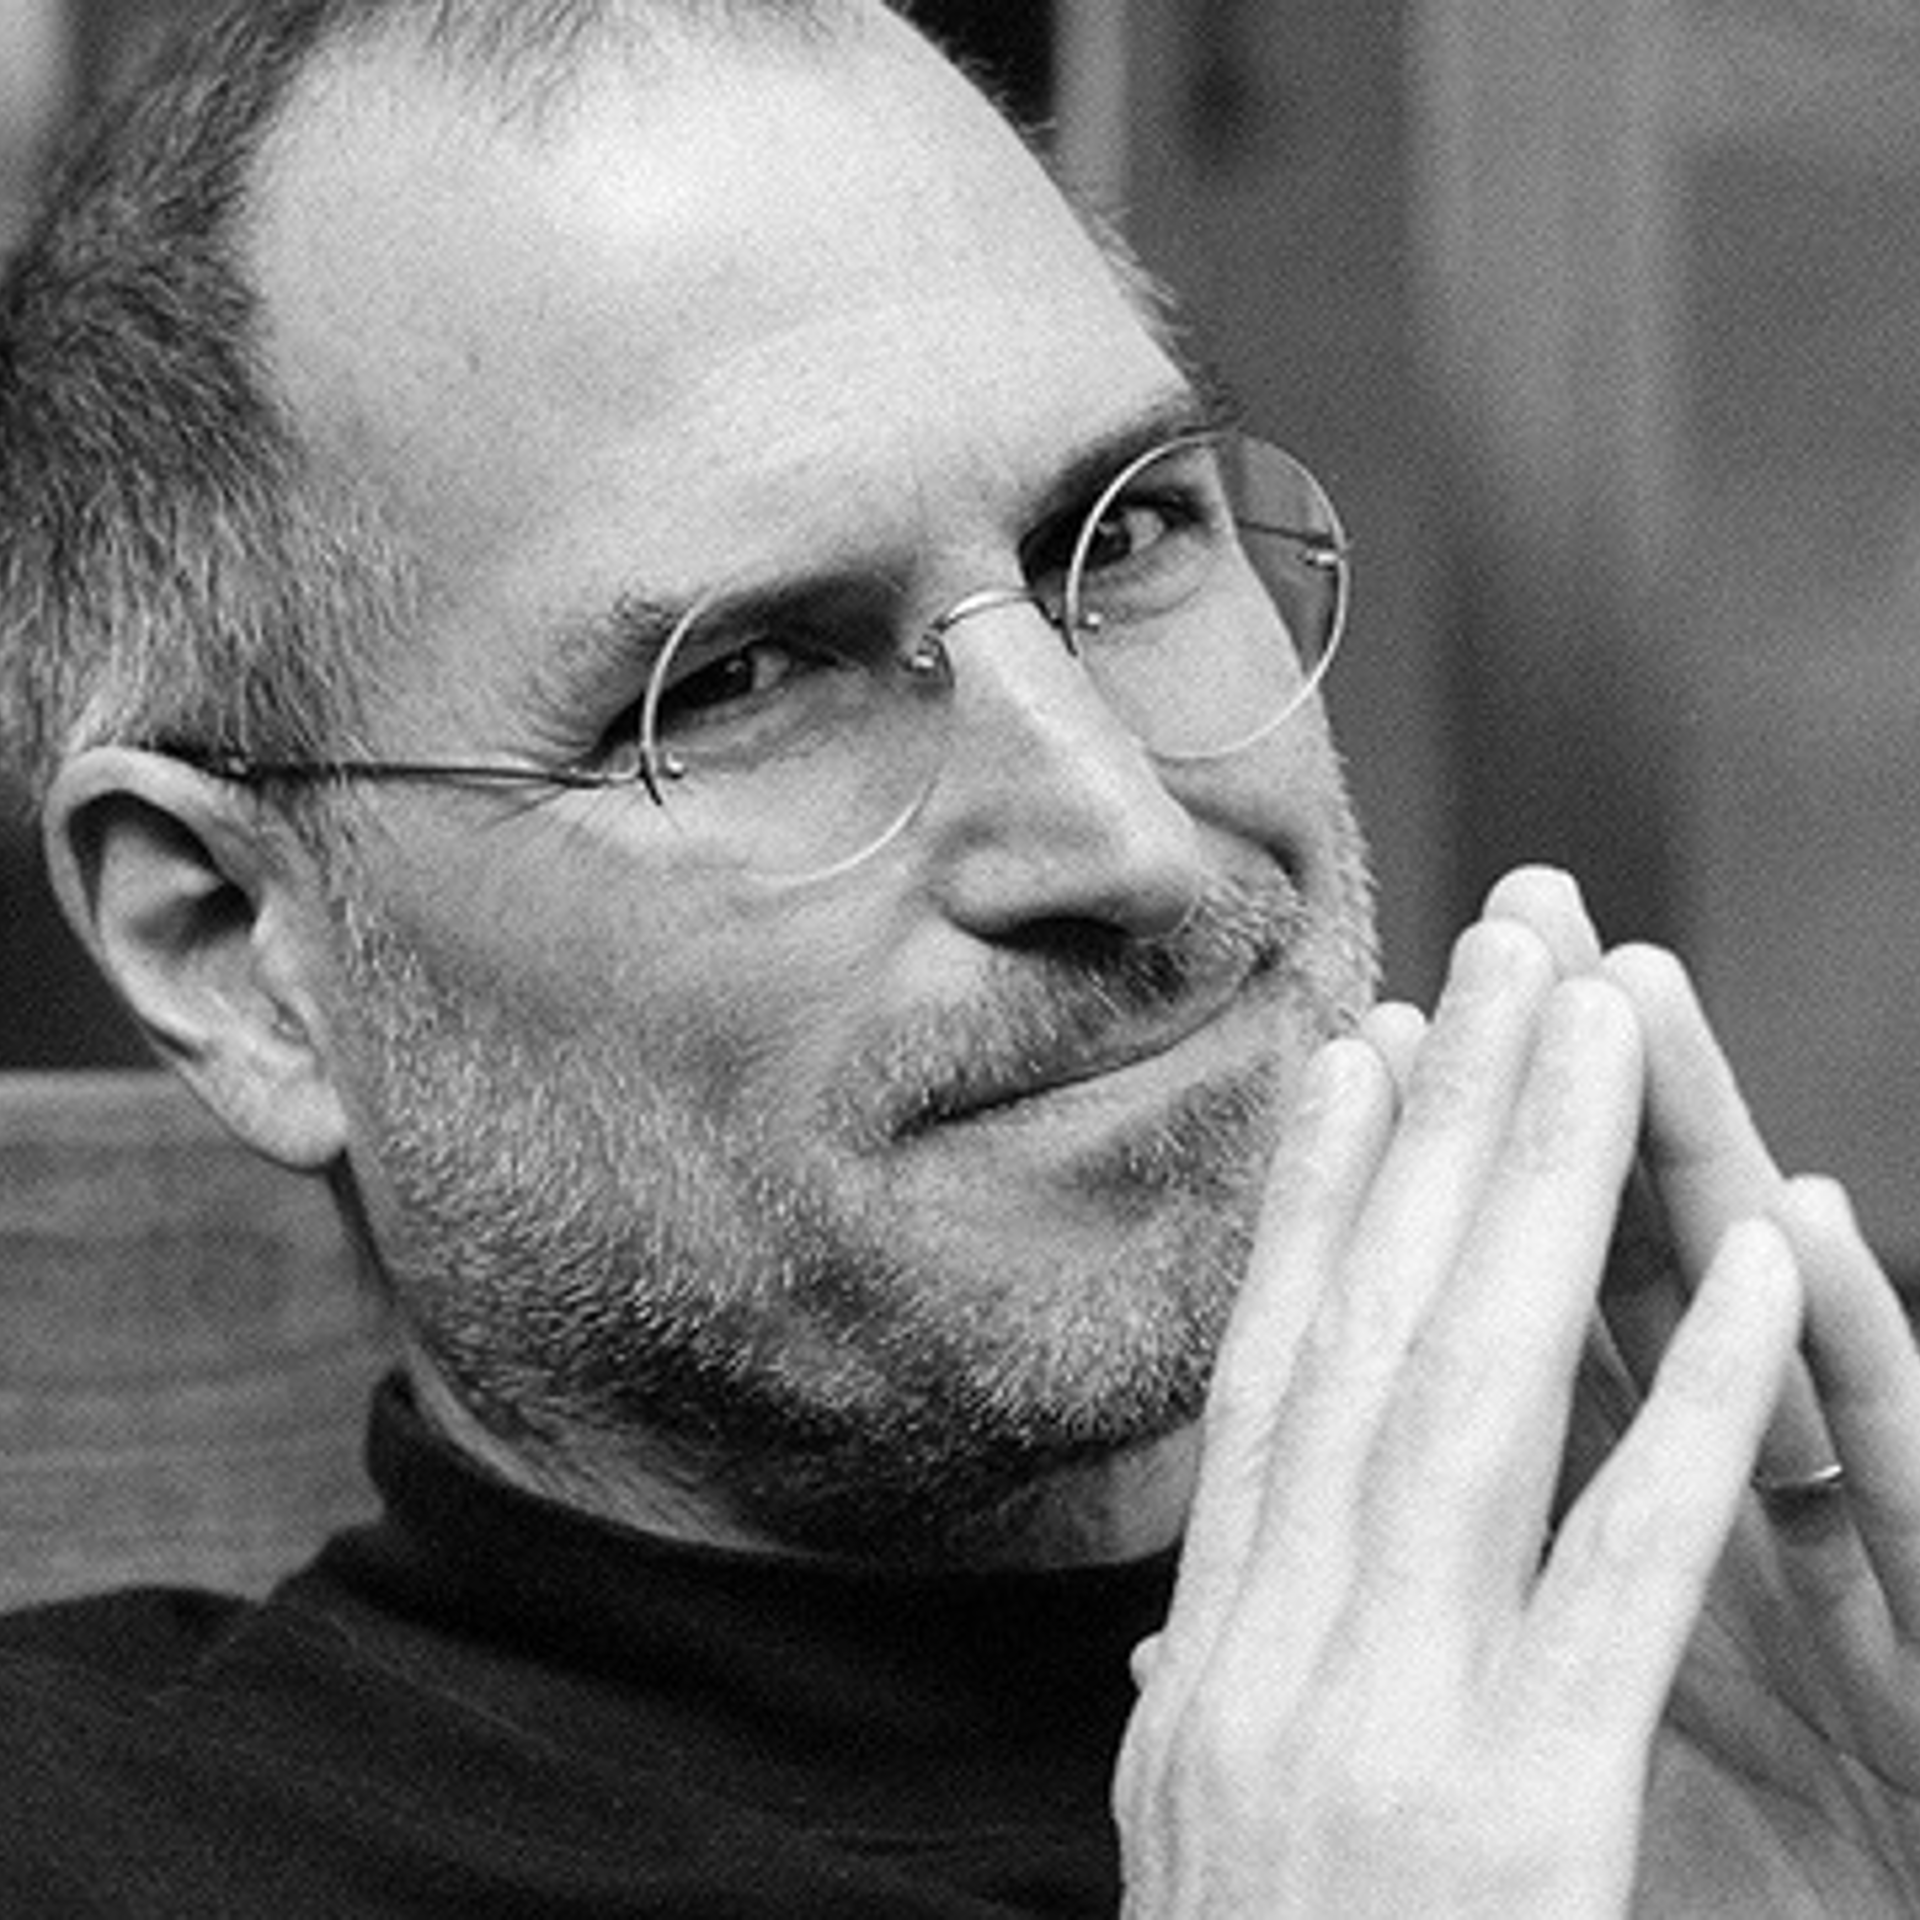 Mr. Steve Jobs